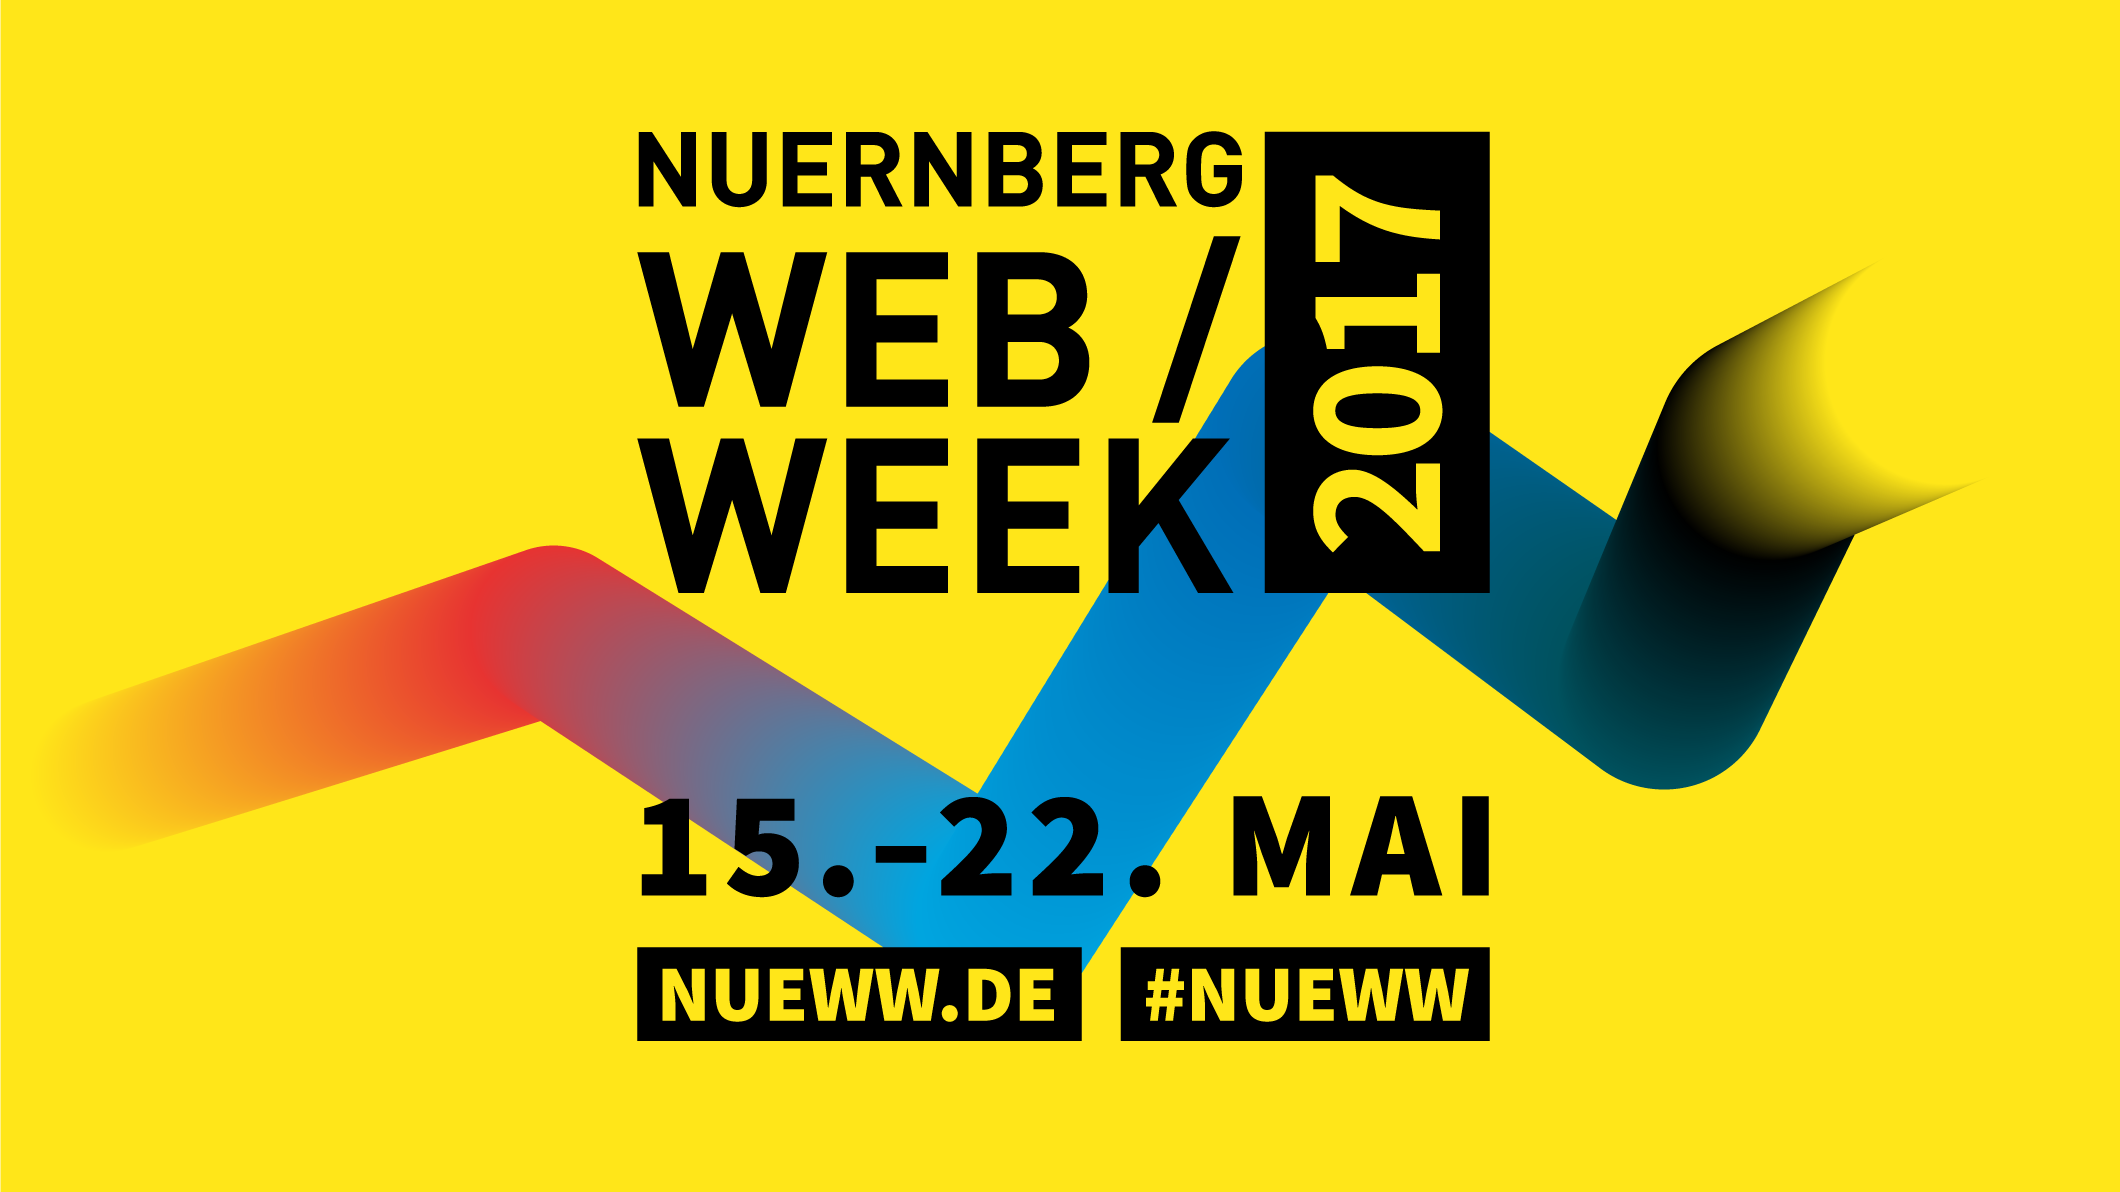 Nuernberg Web Week 2017